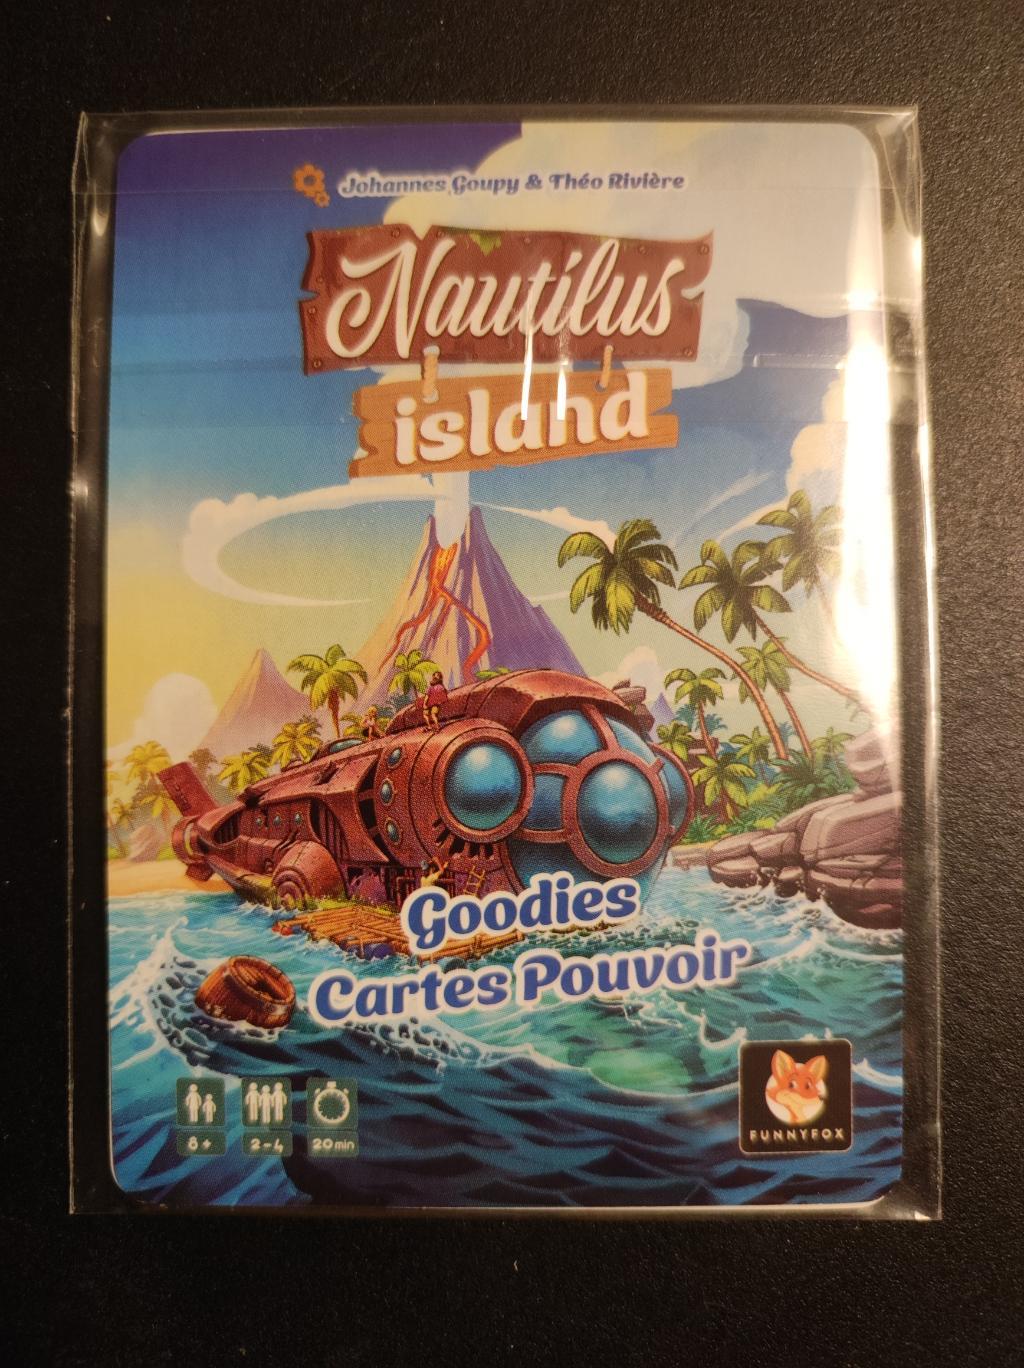 Nautilus Island - Goodies Cartes Pouvoir